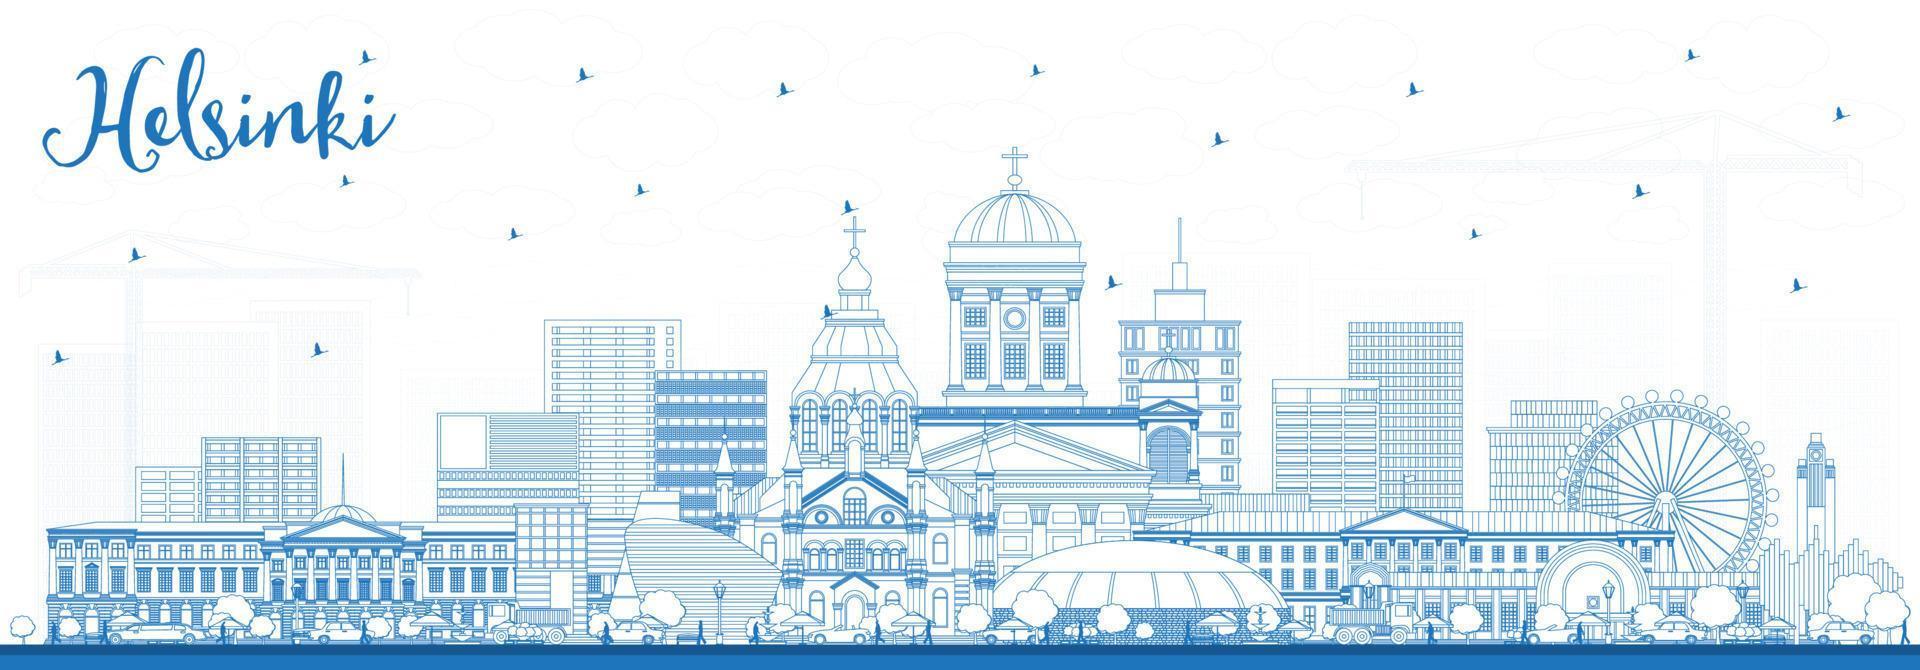 décrire les toits de la ville d'helsinki en finlande avec des bâtiments bleus. vecteur